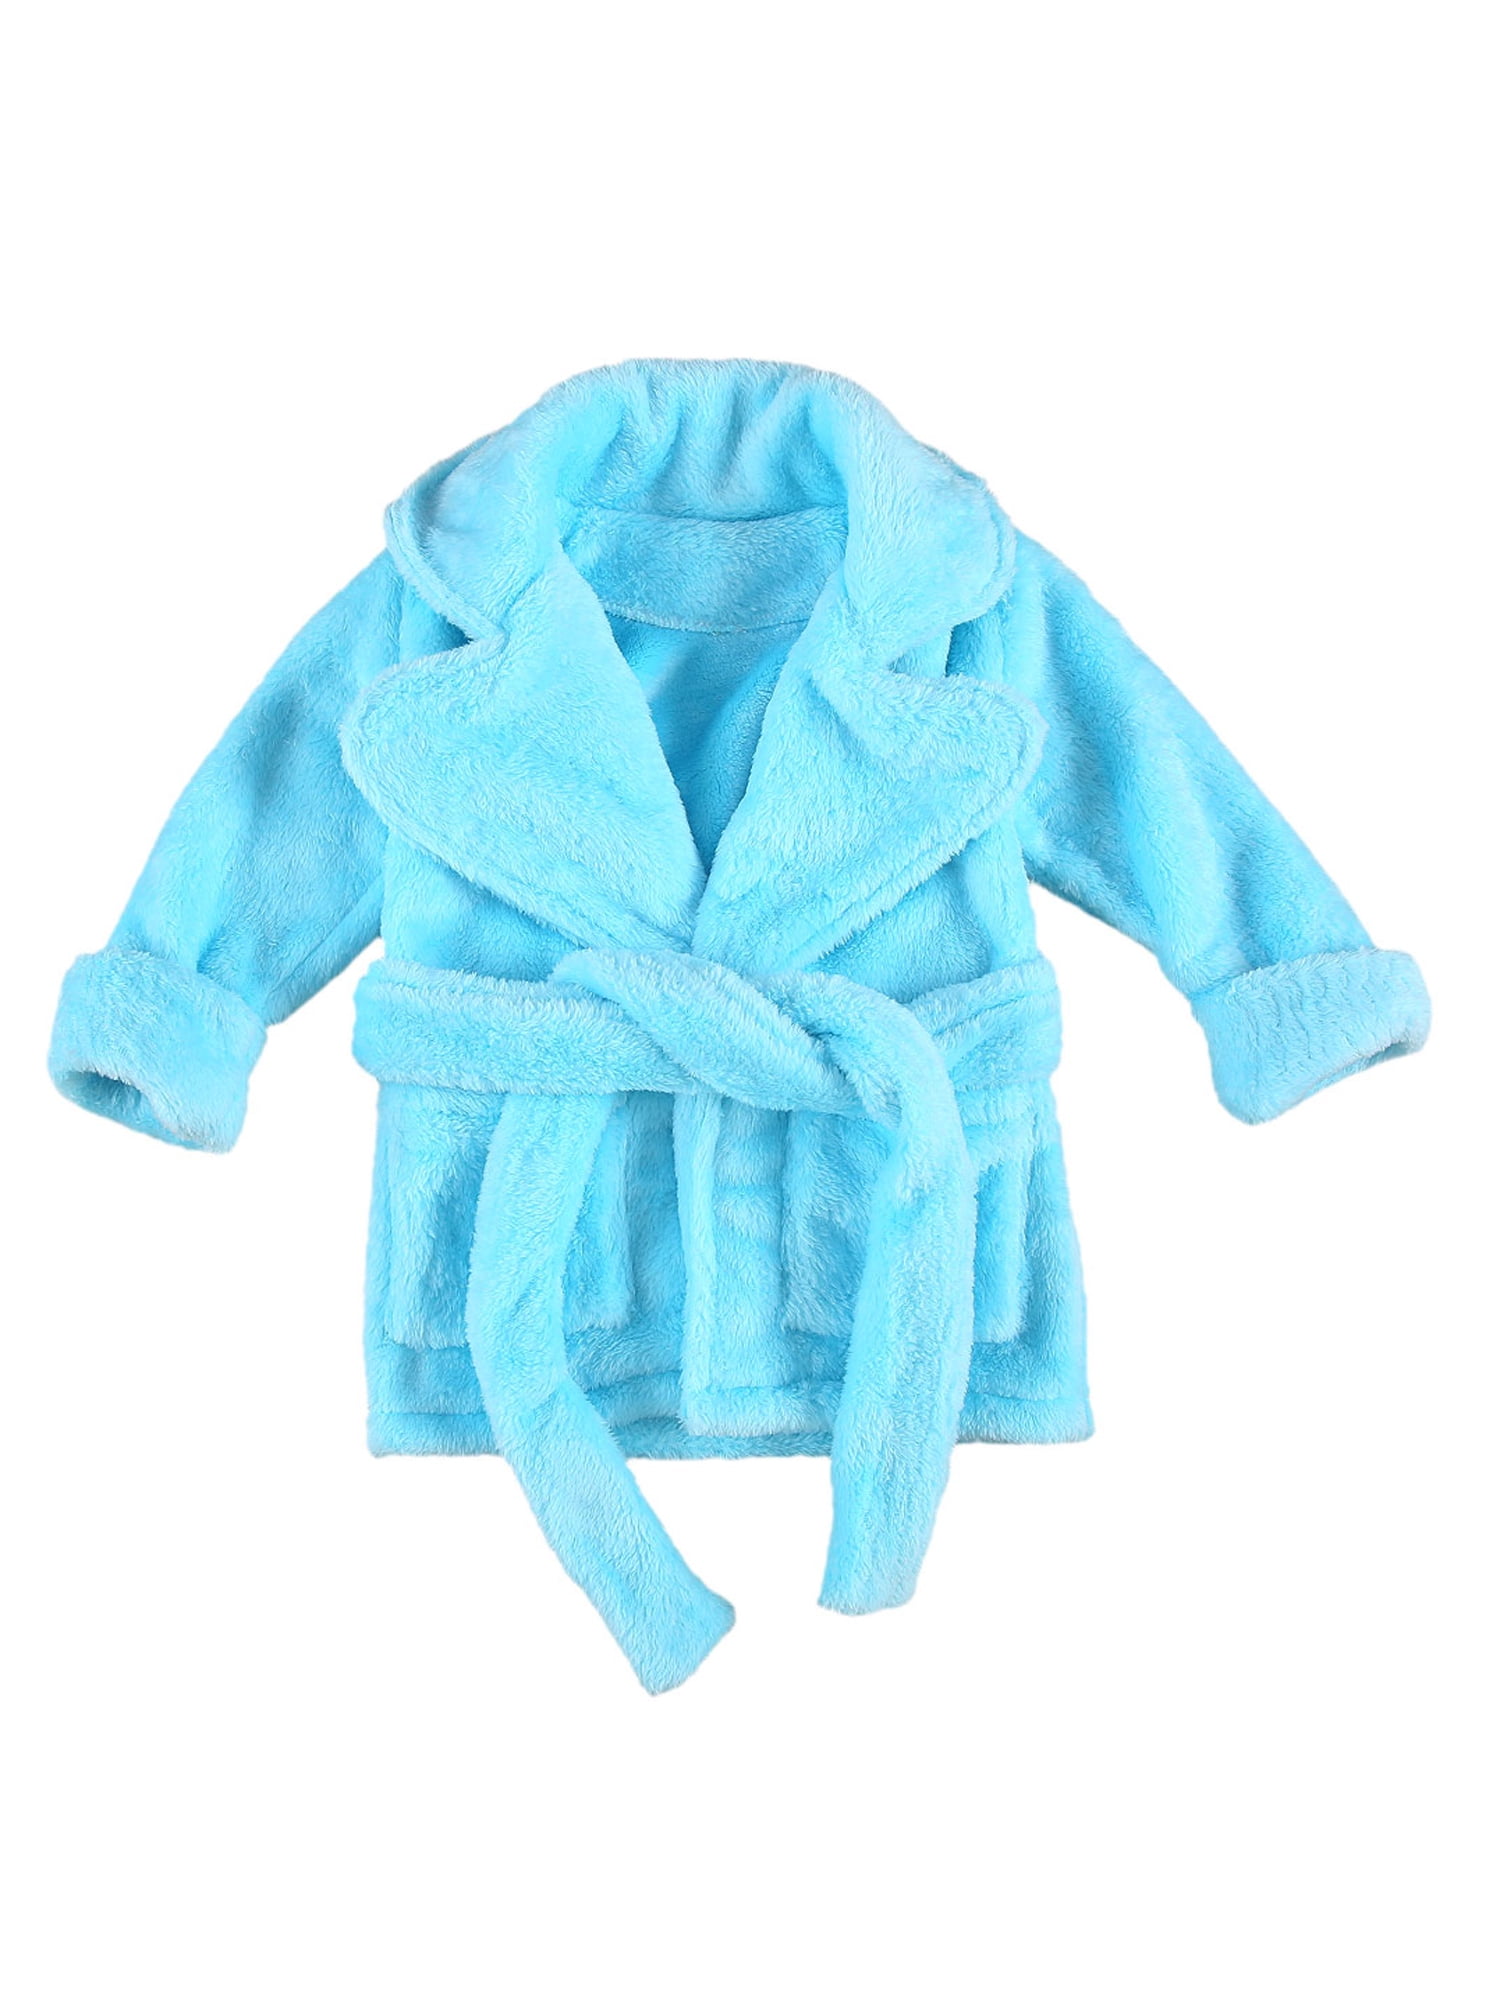 Boys Blue 'Gaming Boy' Soft Flannel Fleece Bath Robe/Dressing Gown Ages 5-12 